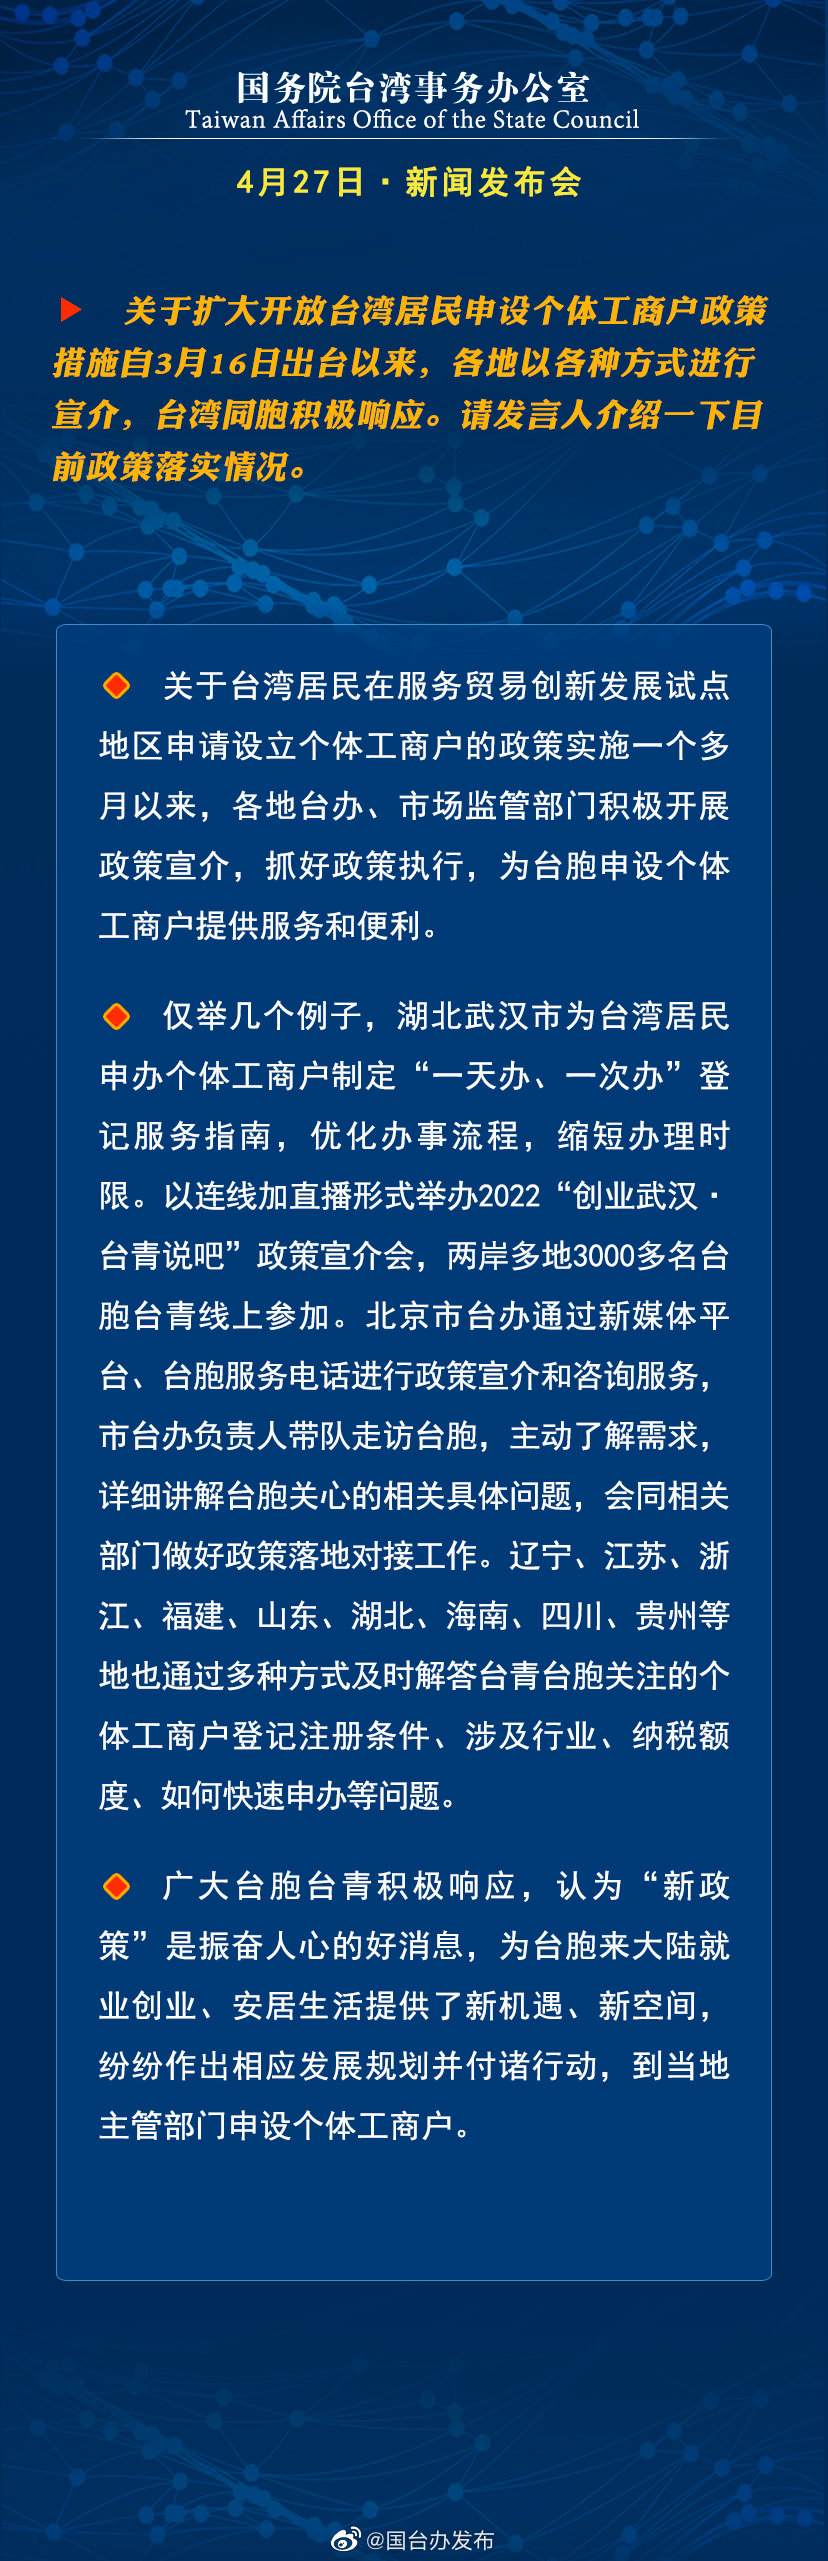 国务院台湾事务办公室4月27日·新闻发布会